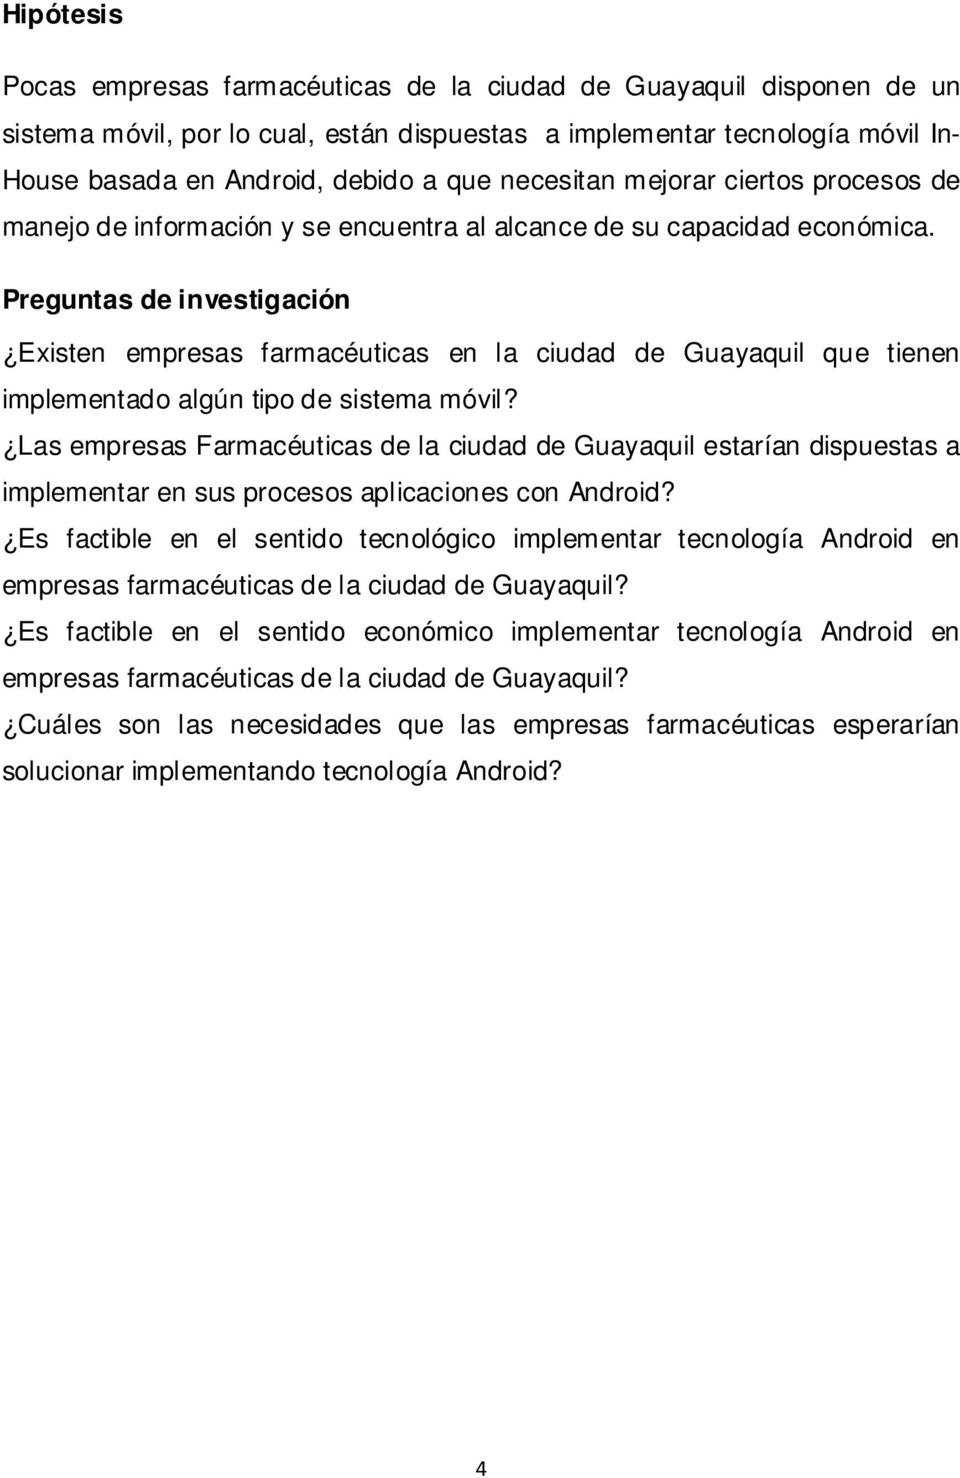 Preguntas de investigación Existen empresas farmacéuticas en la ciudad de Guayaquil que tienen implementado algún tipo de sistema móvil?